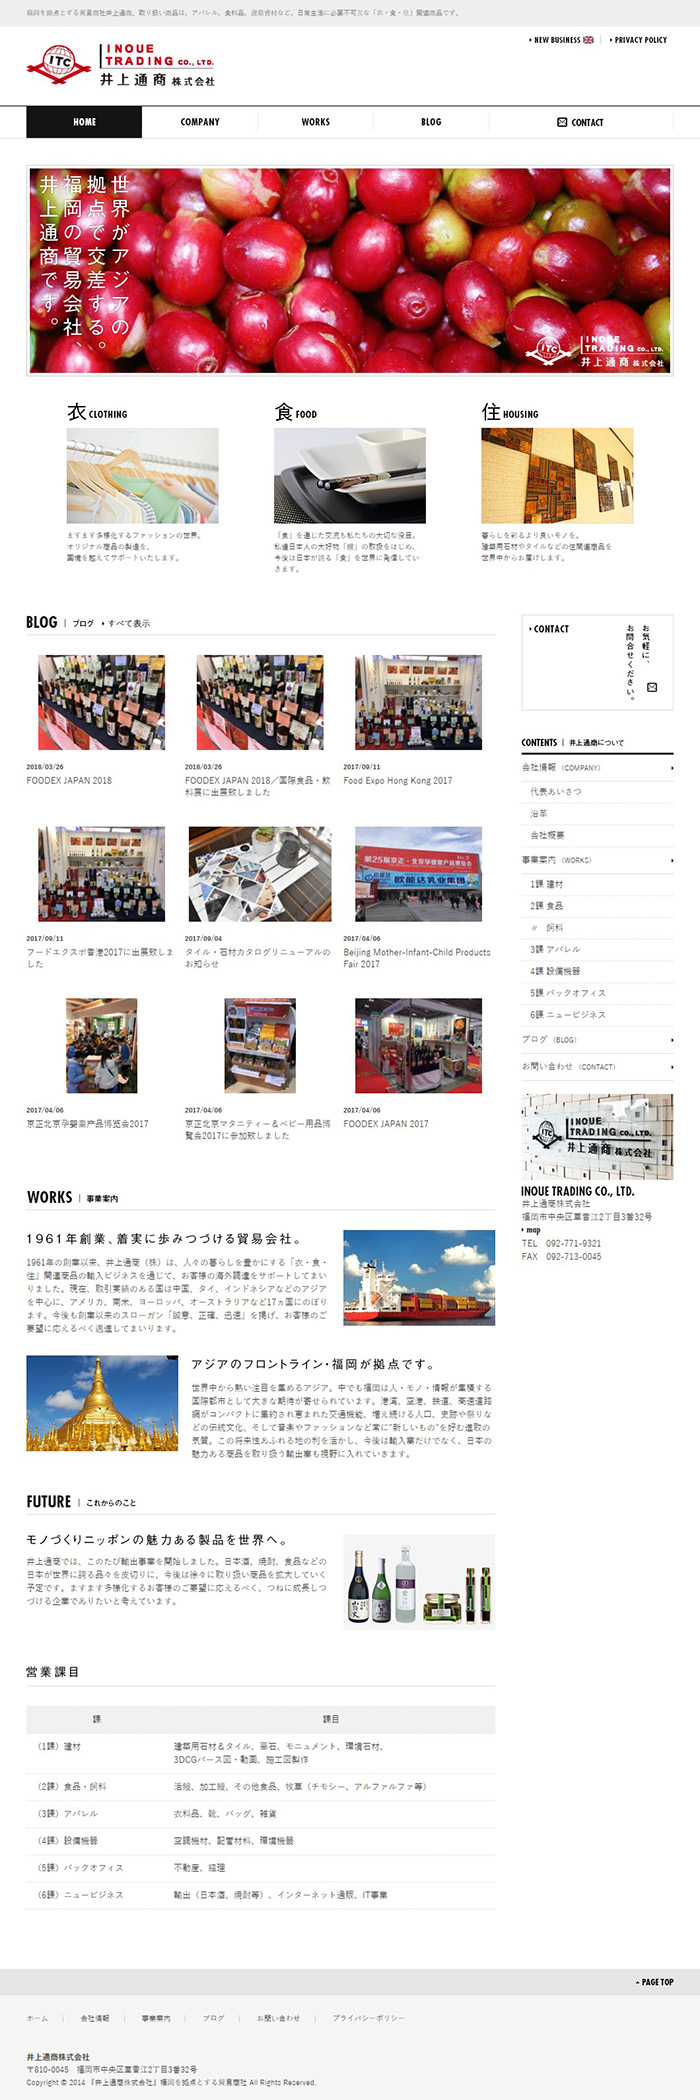 福岡の貿易商社様ホームページ制作実績 デスクトップイメージ